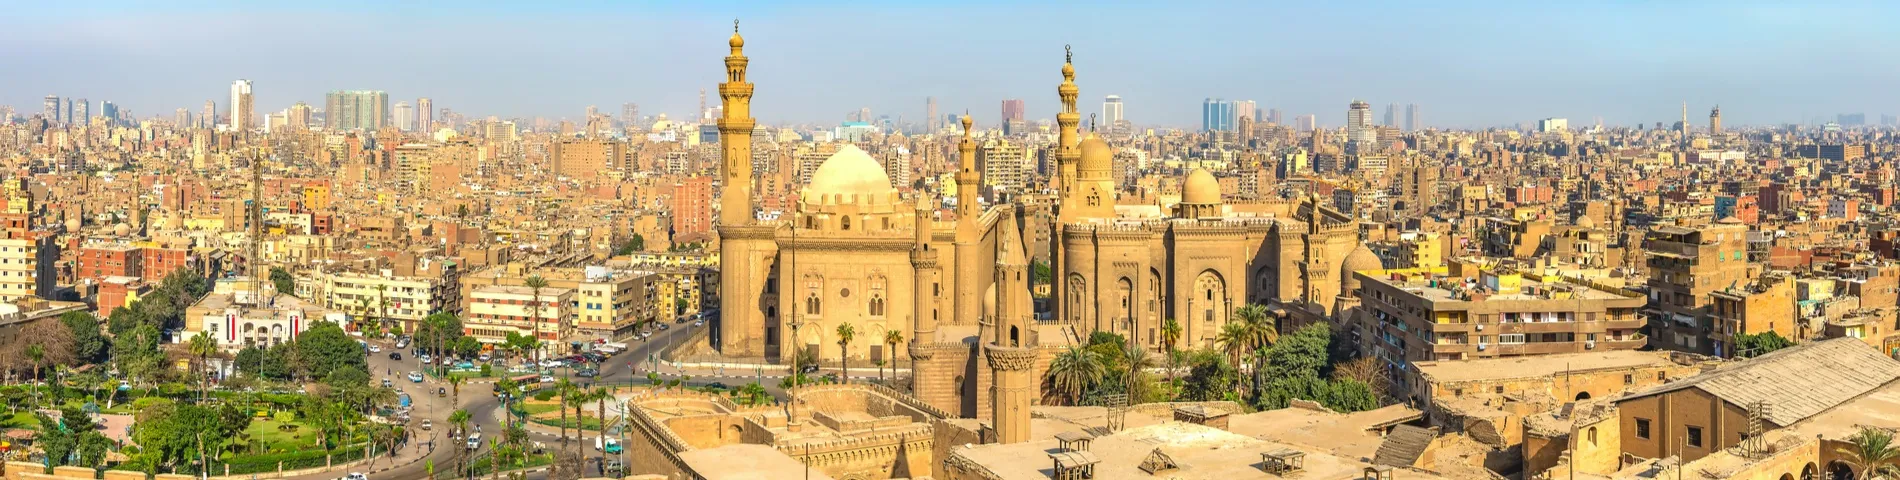 El Caire - Curs estàndard